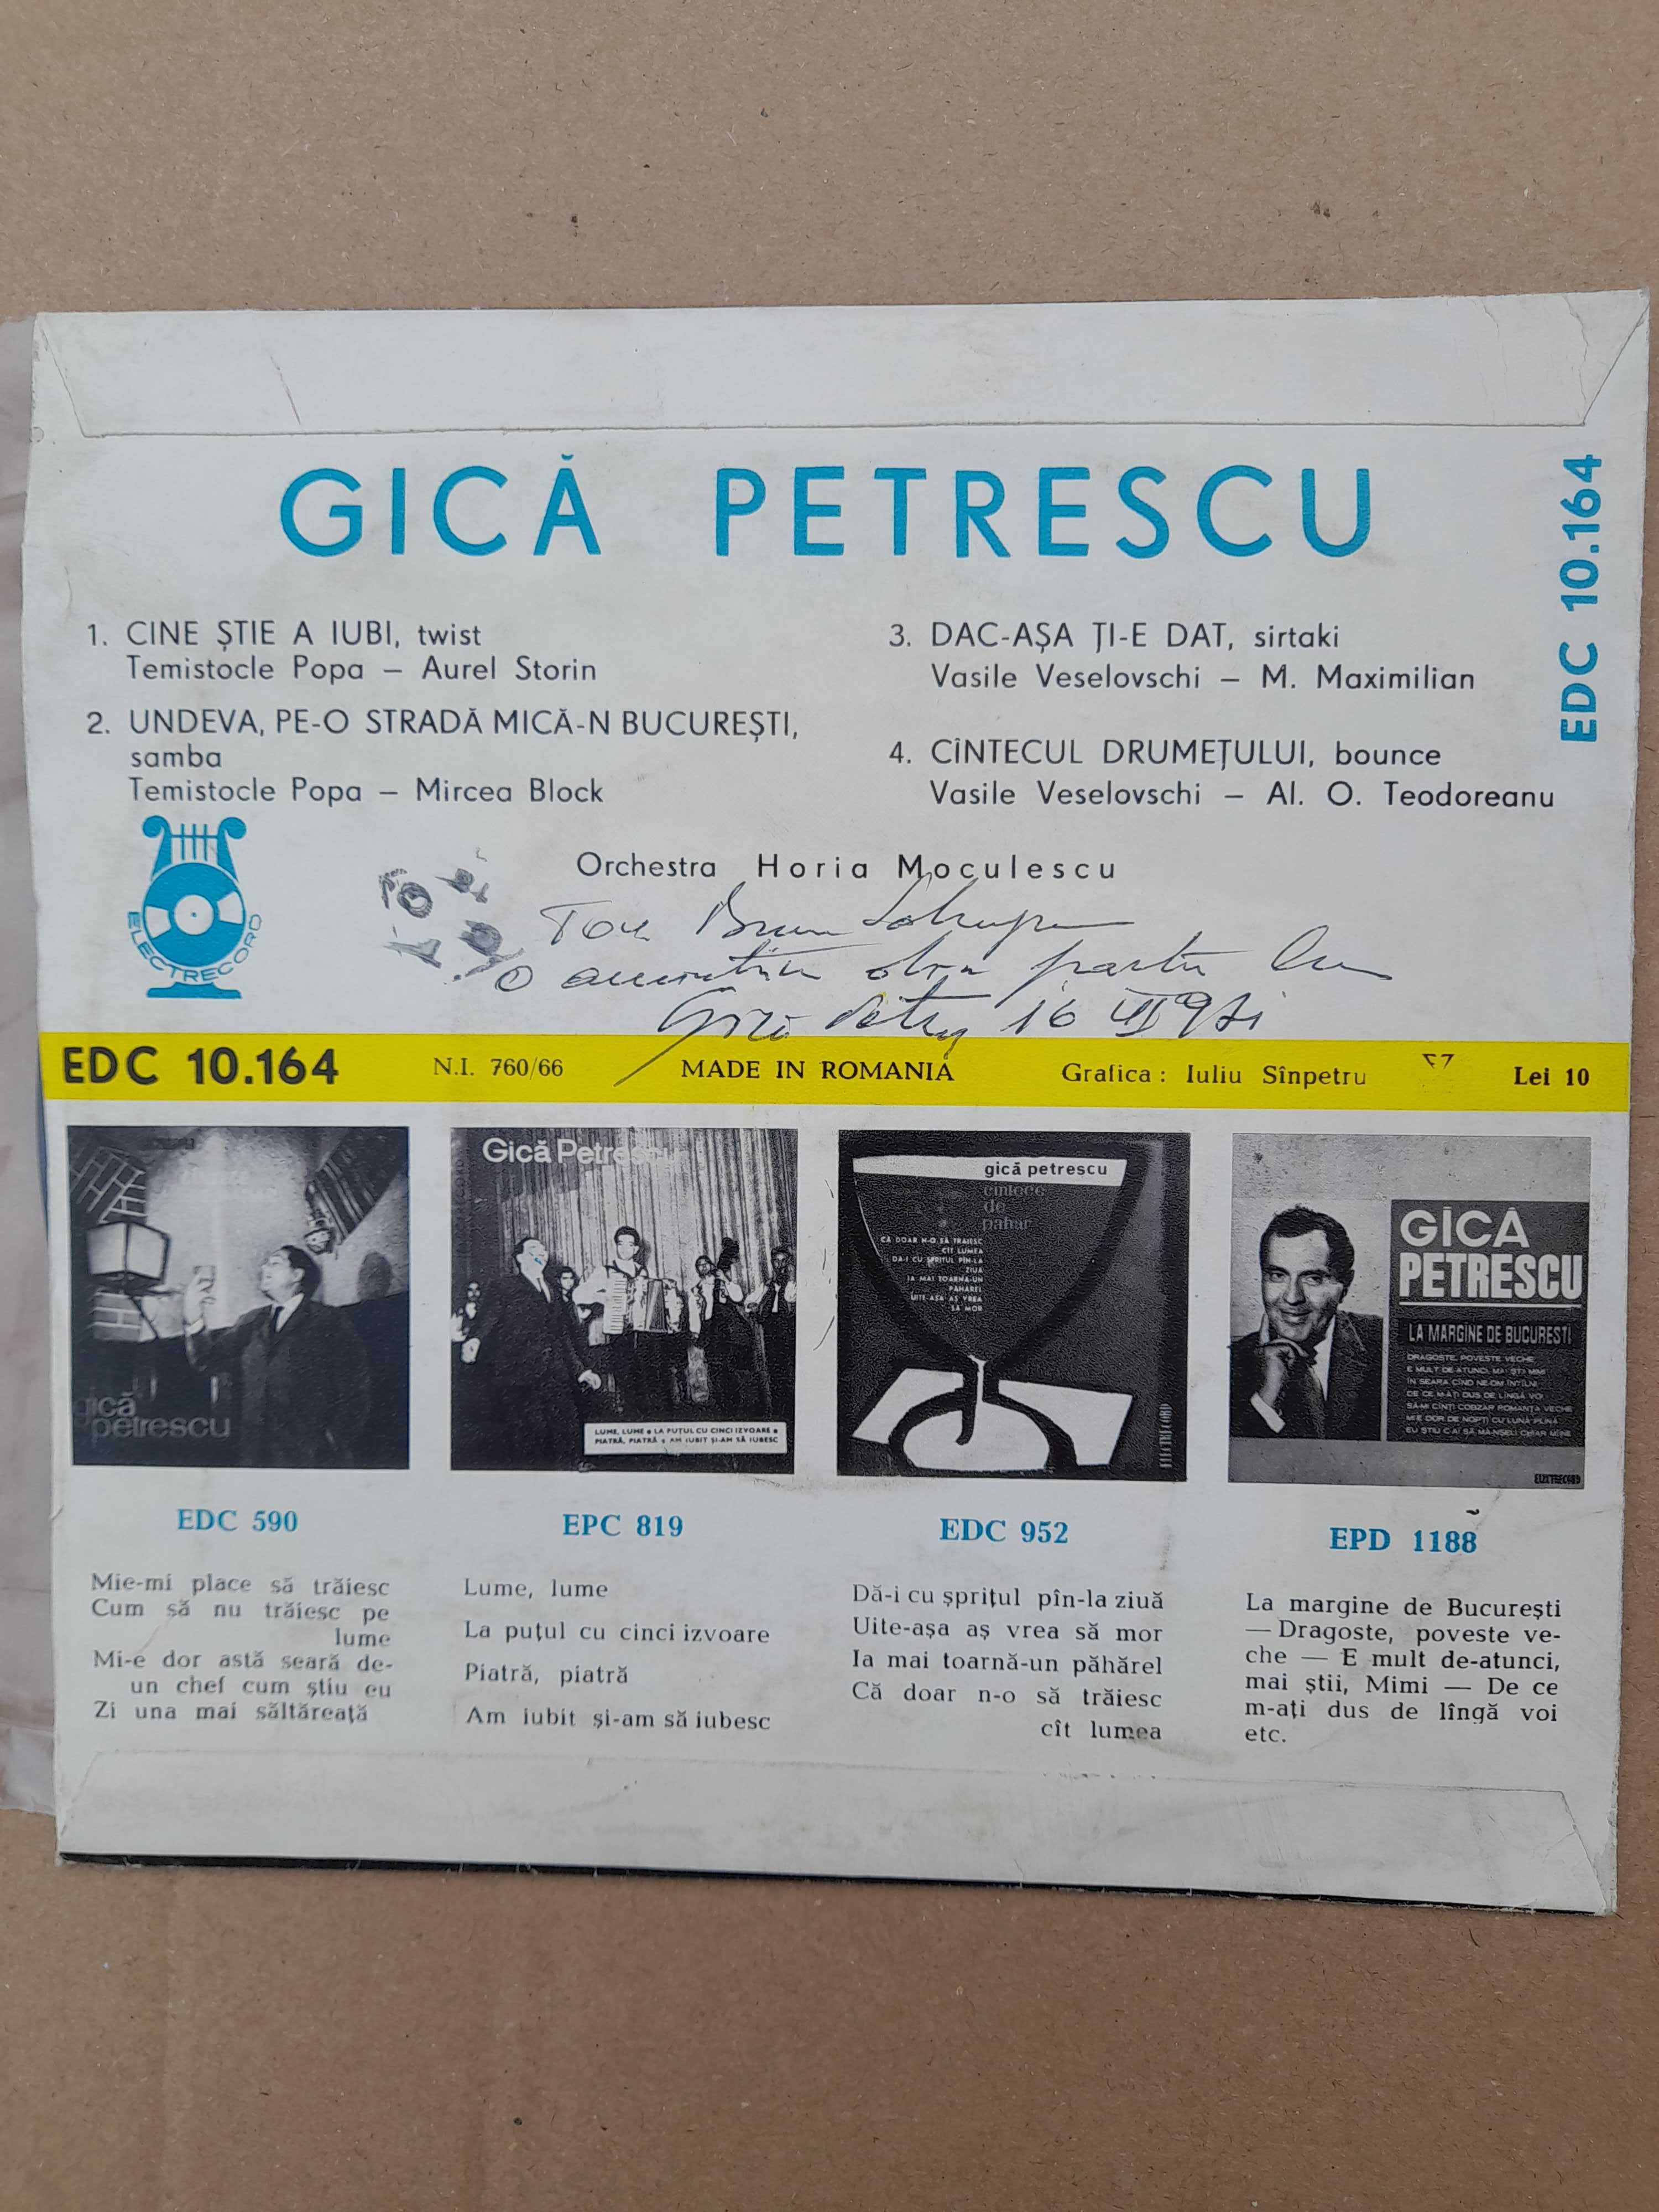 Disc vinil Gica Petrescu, cu autograf, dedicatie si data